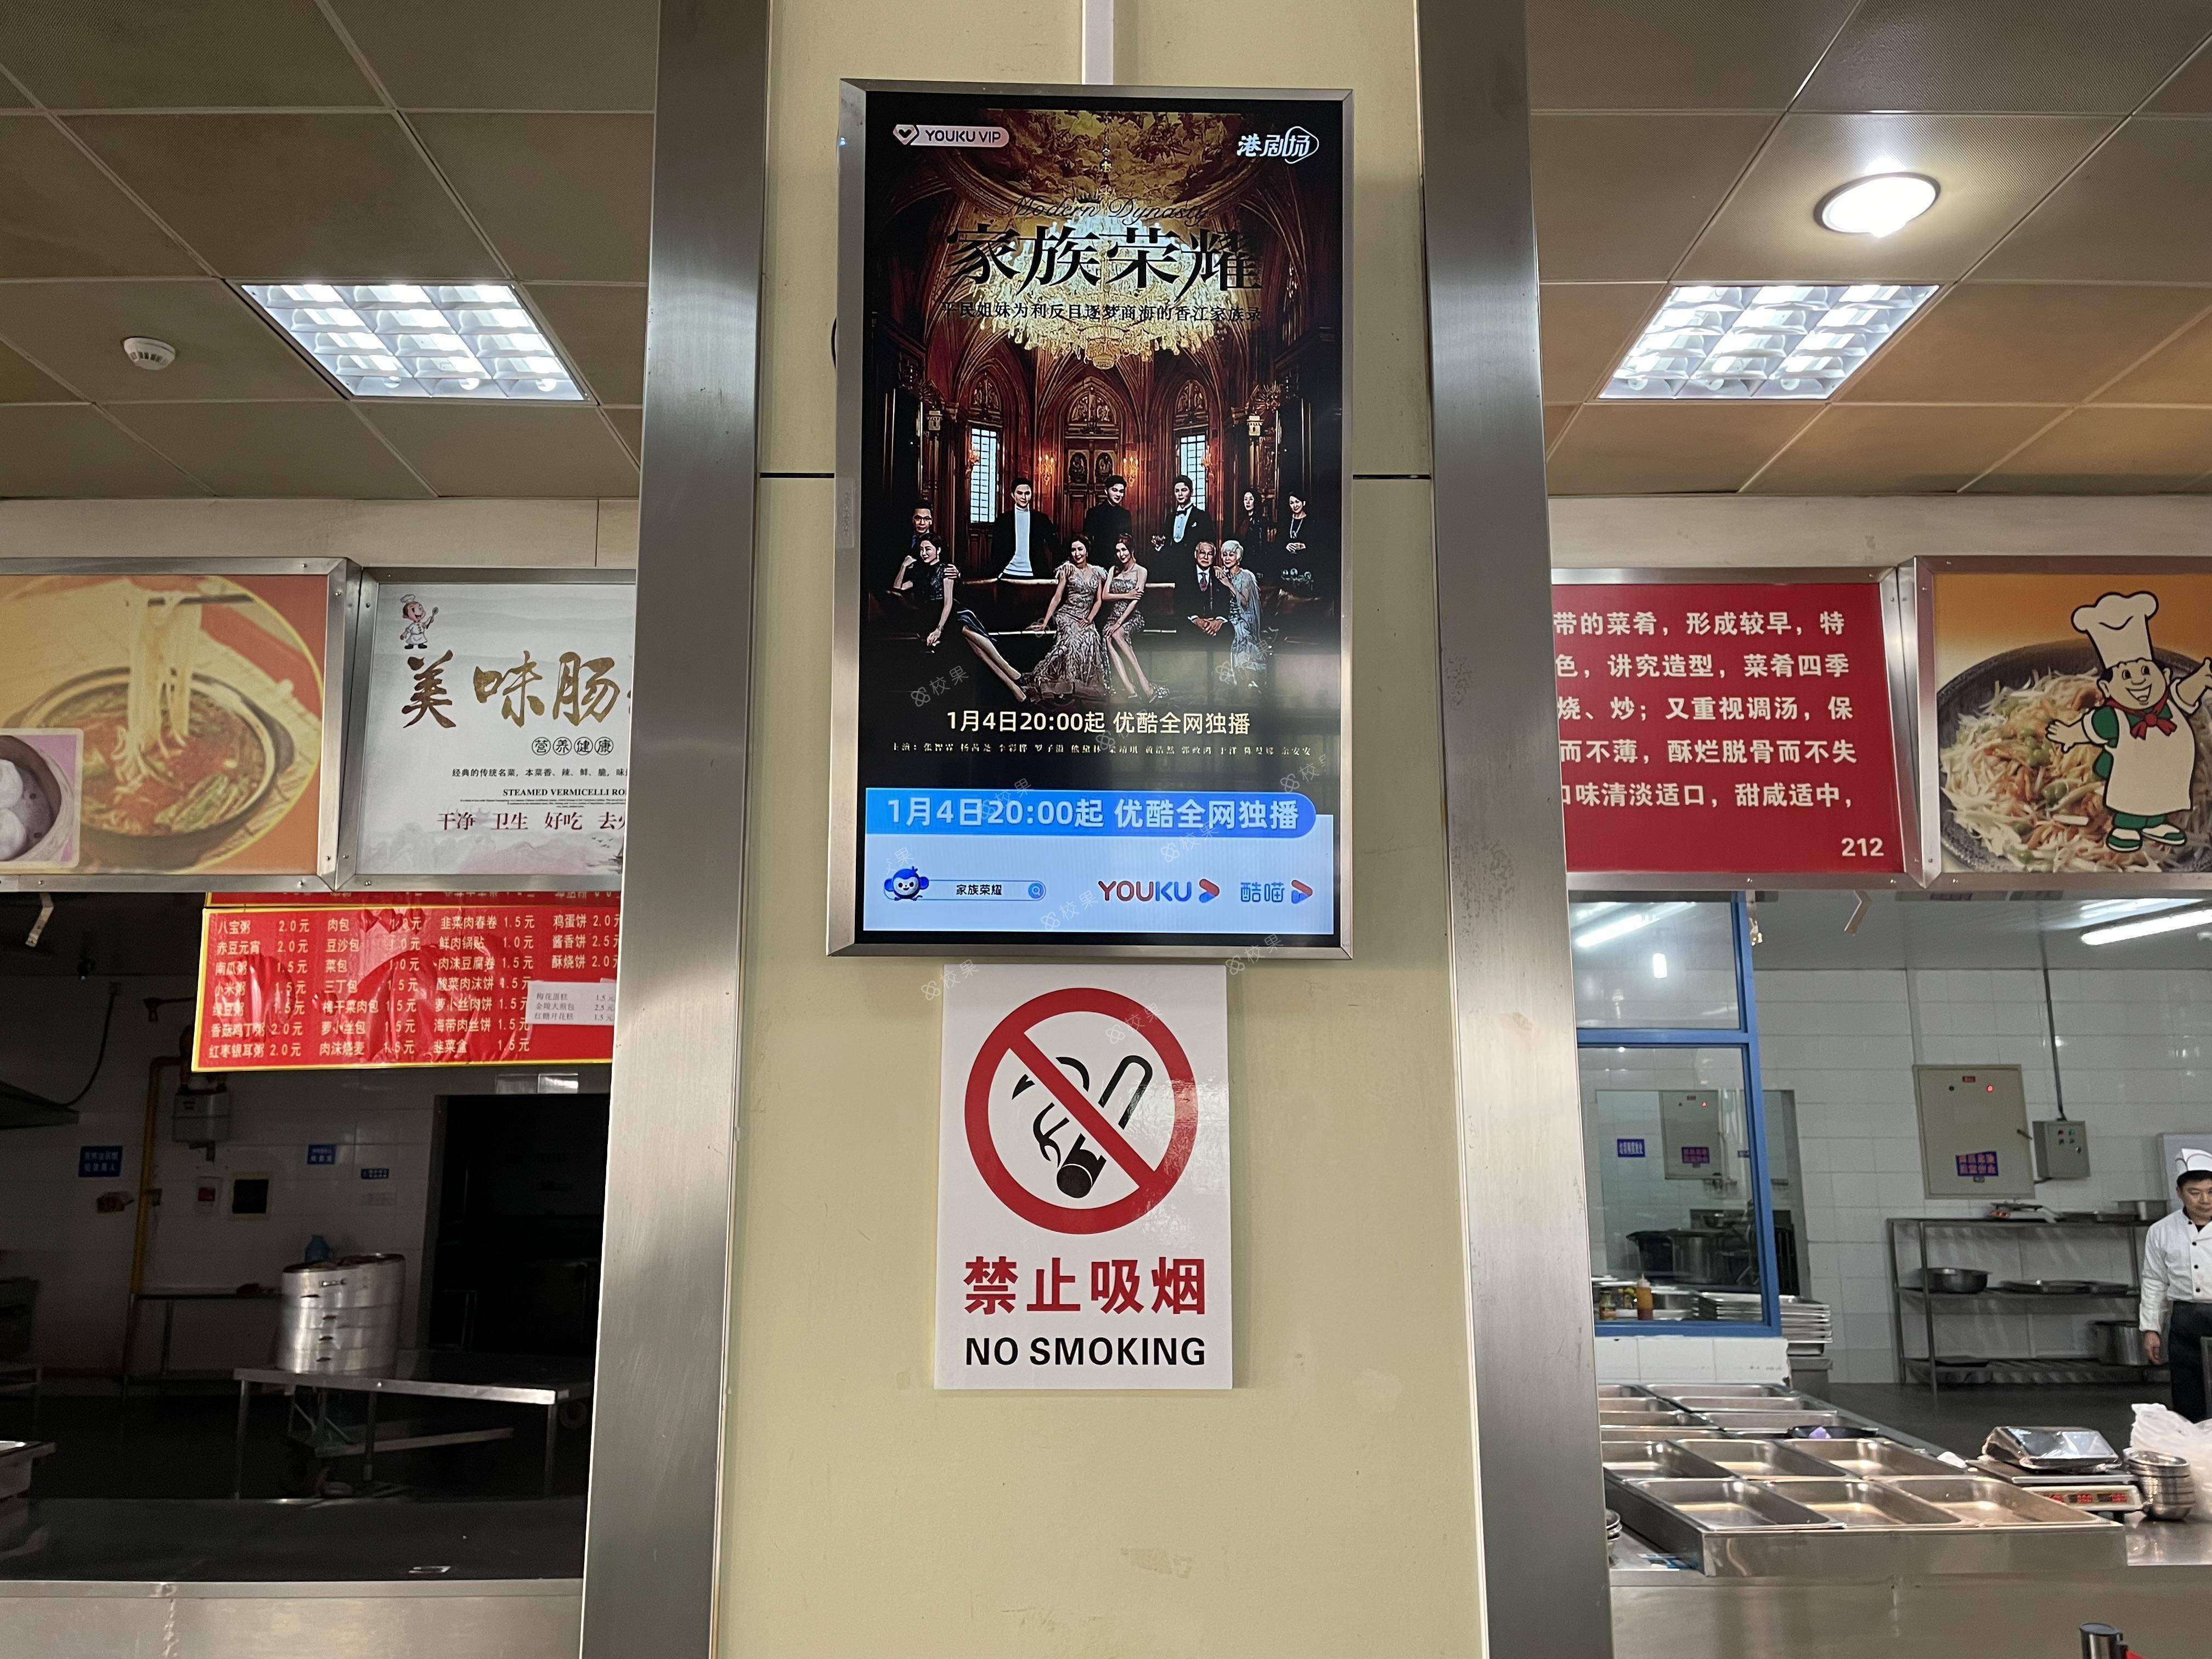 液晶屏广告 中国农业大学-东校区